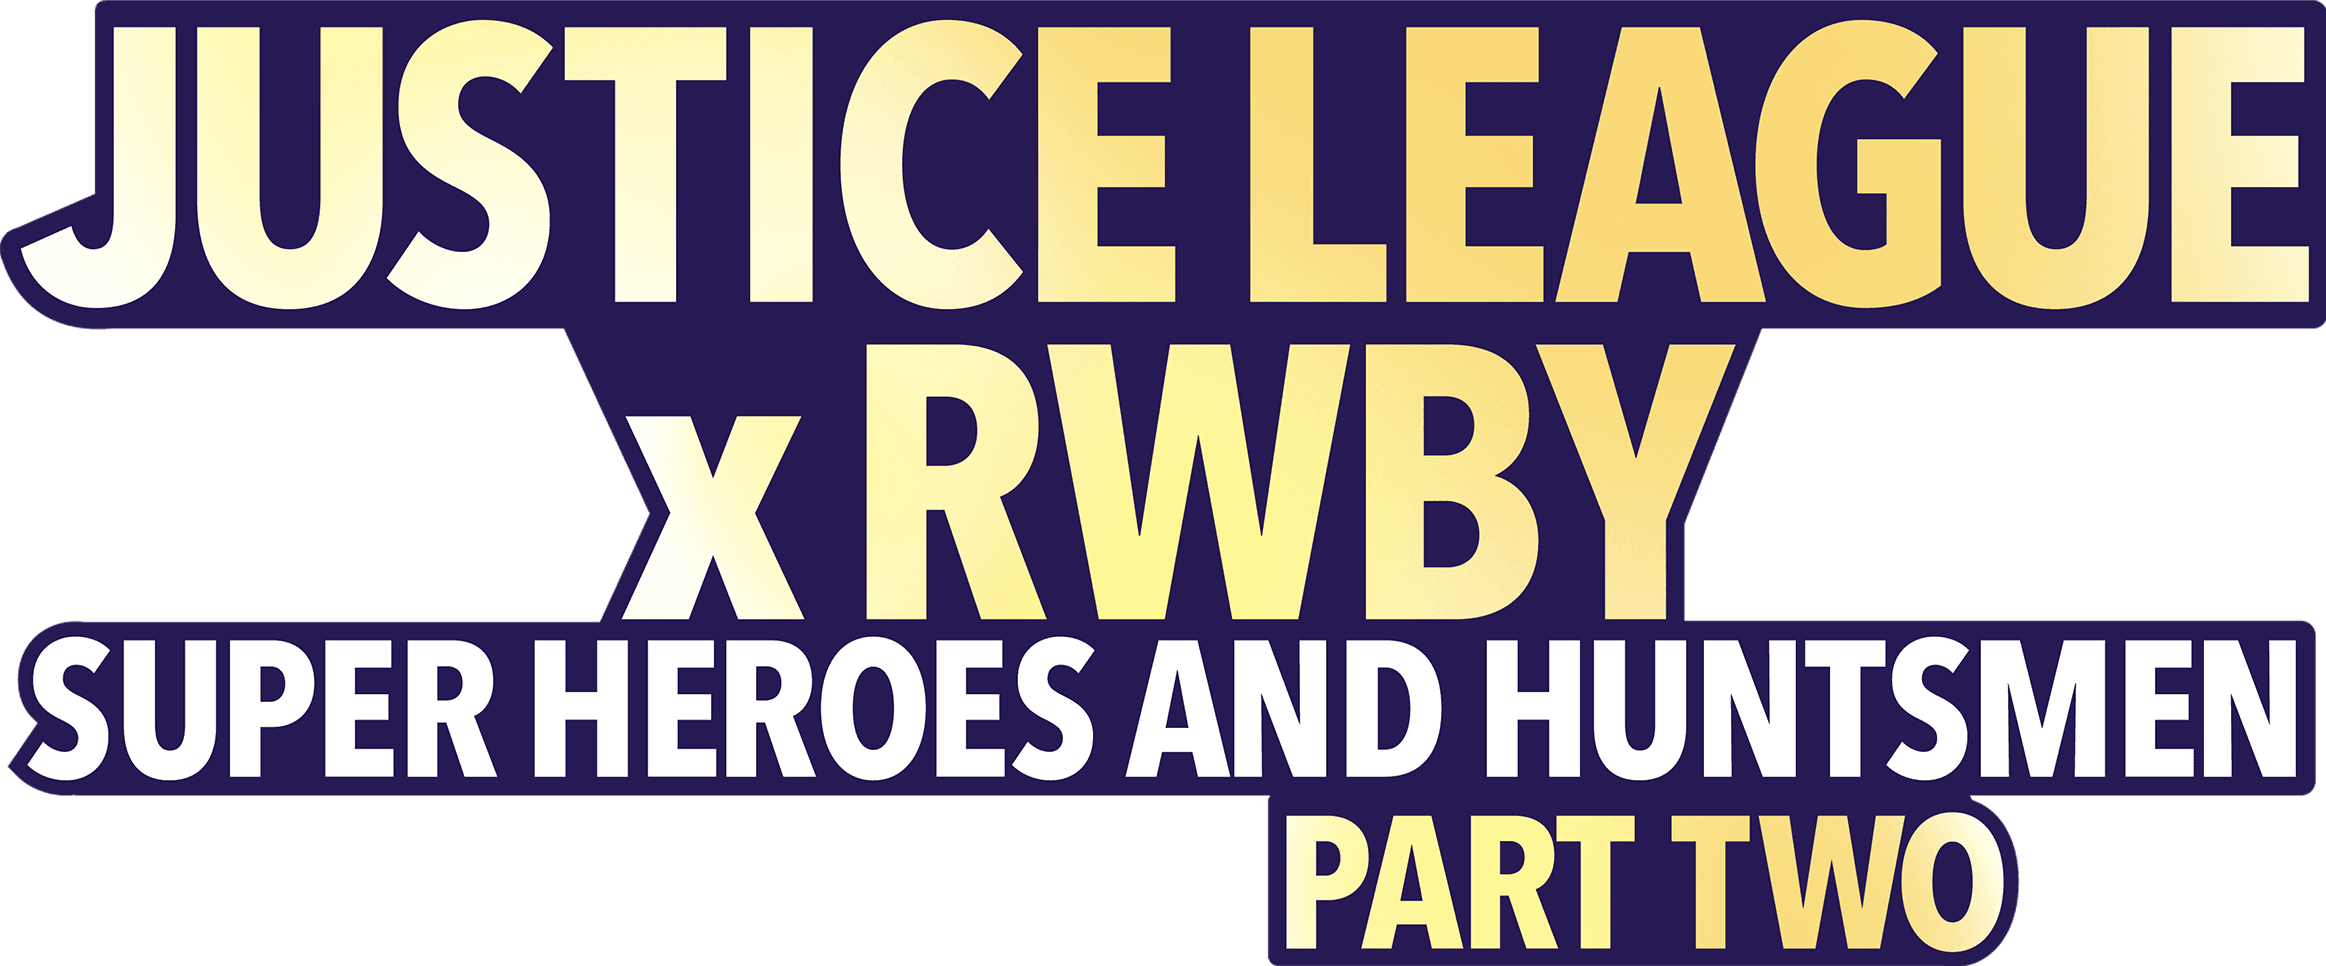 Justice League x RWBY: Super Heroes & Huntsmen, Part Two logo